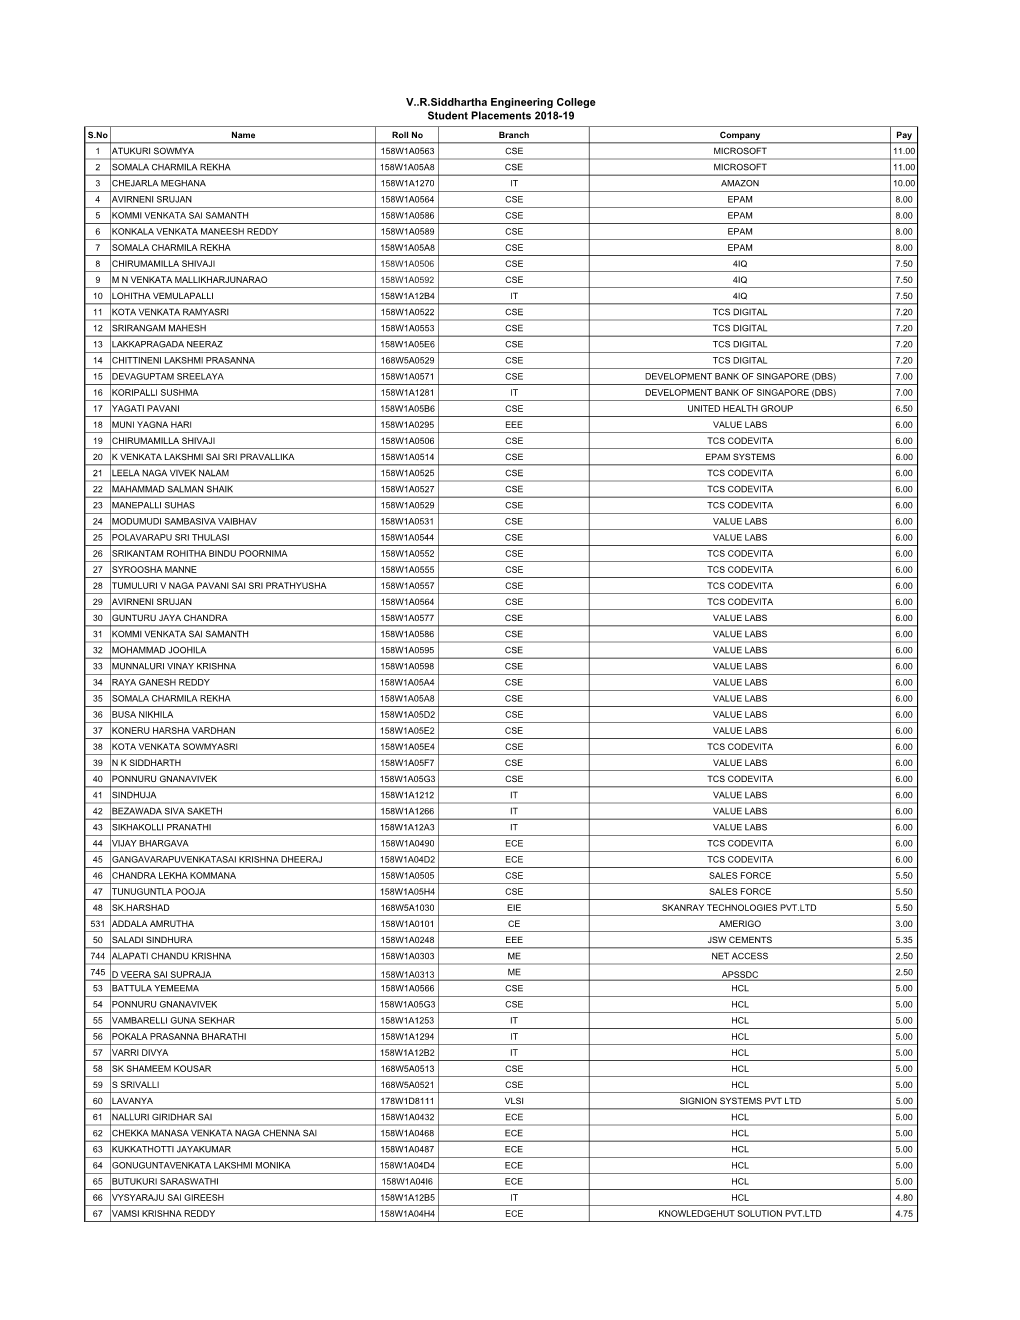 List of Students- 2014-2021.Xlsx